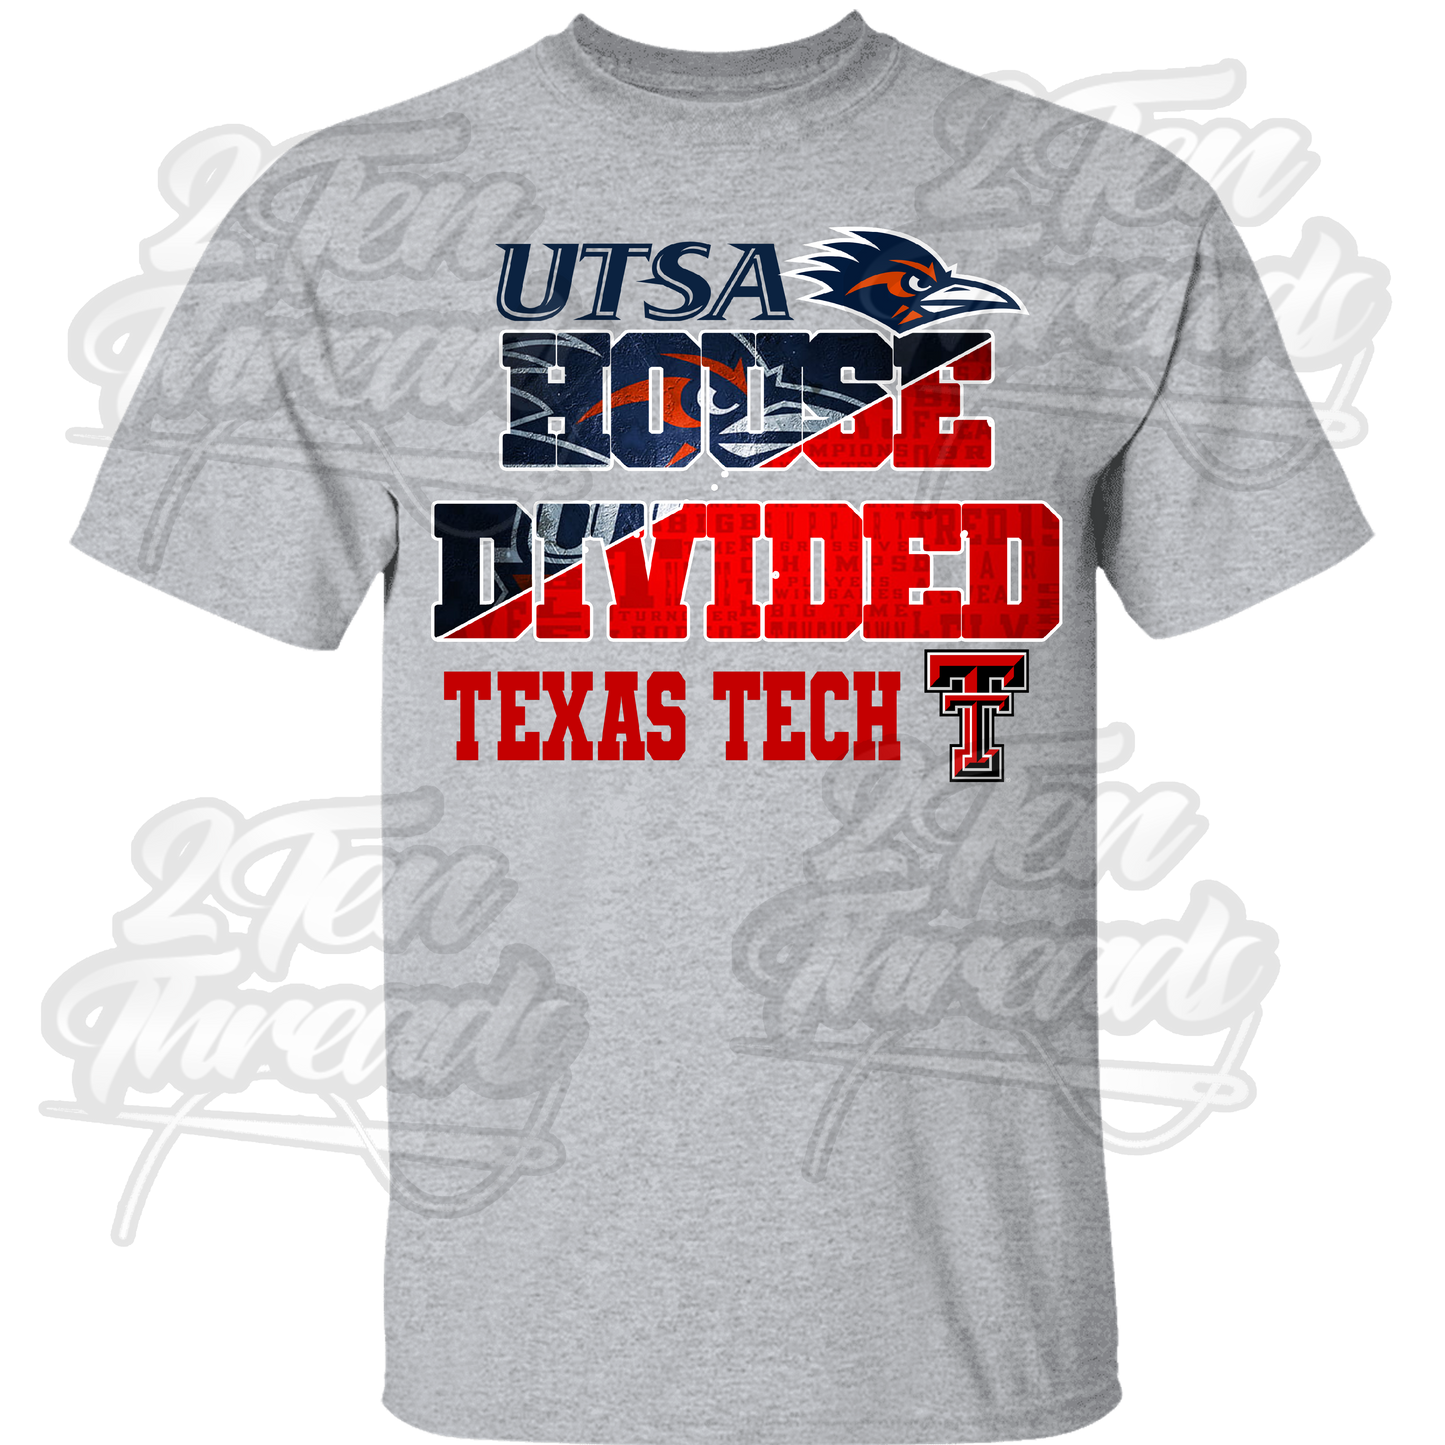 UTSA / Texas Tech House Divided Shirt